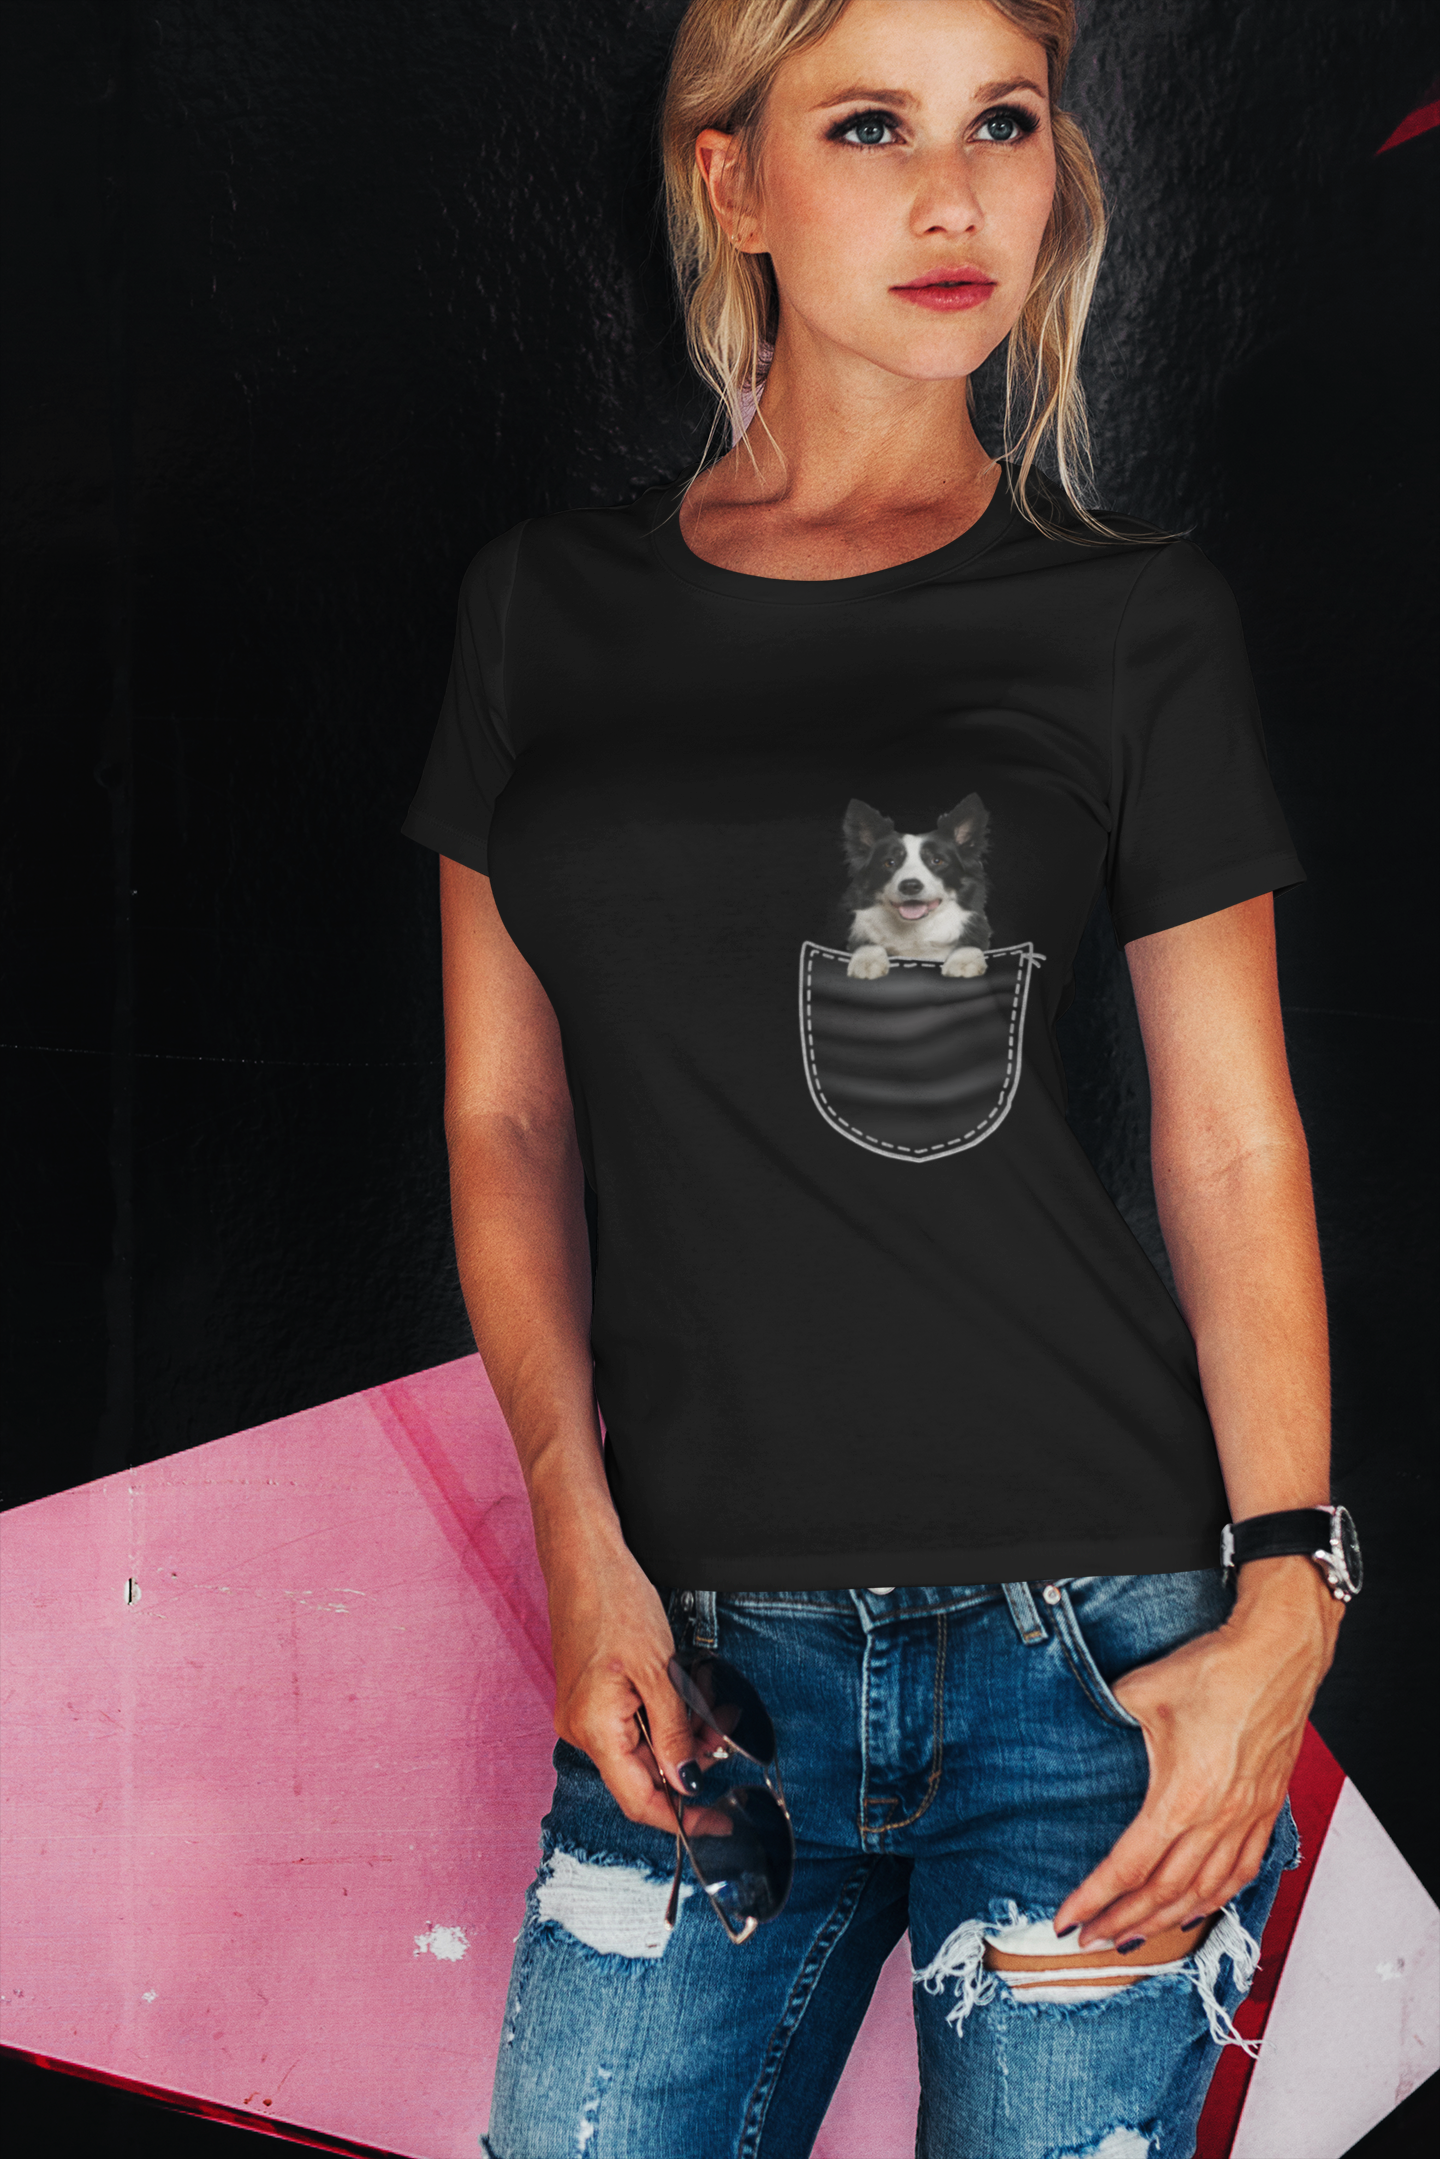 ULTRABASIC Grafik-Damen-T-Shirt Border Collie – süßer Hund in der Tasche